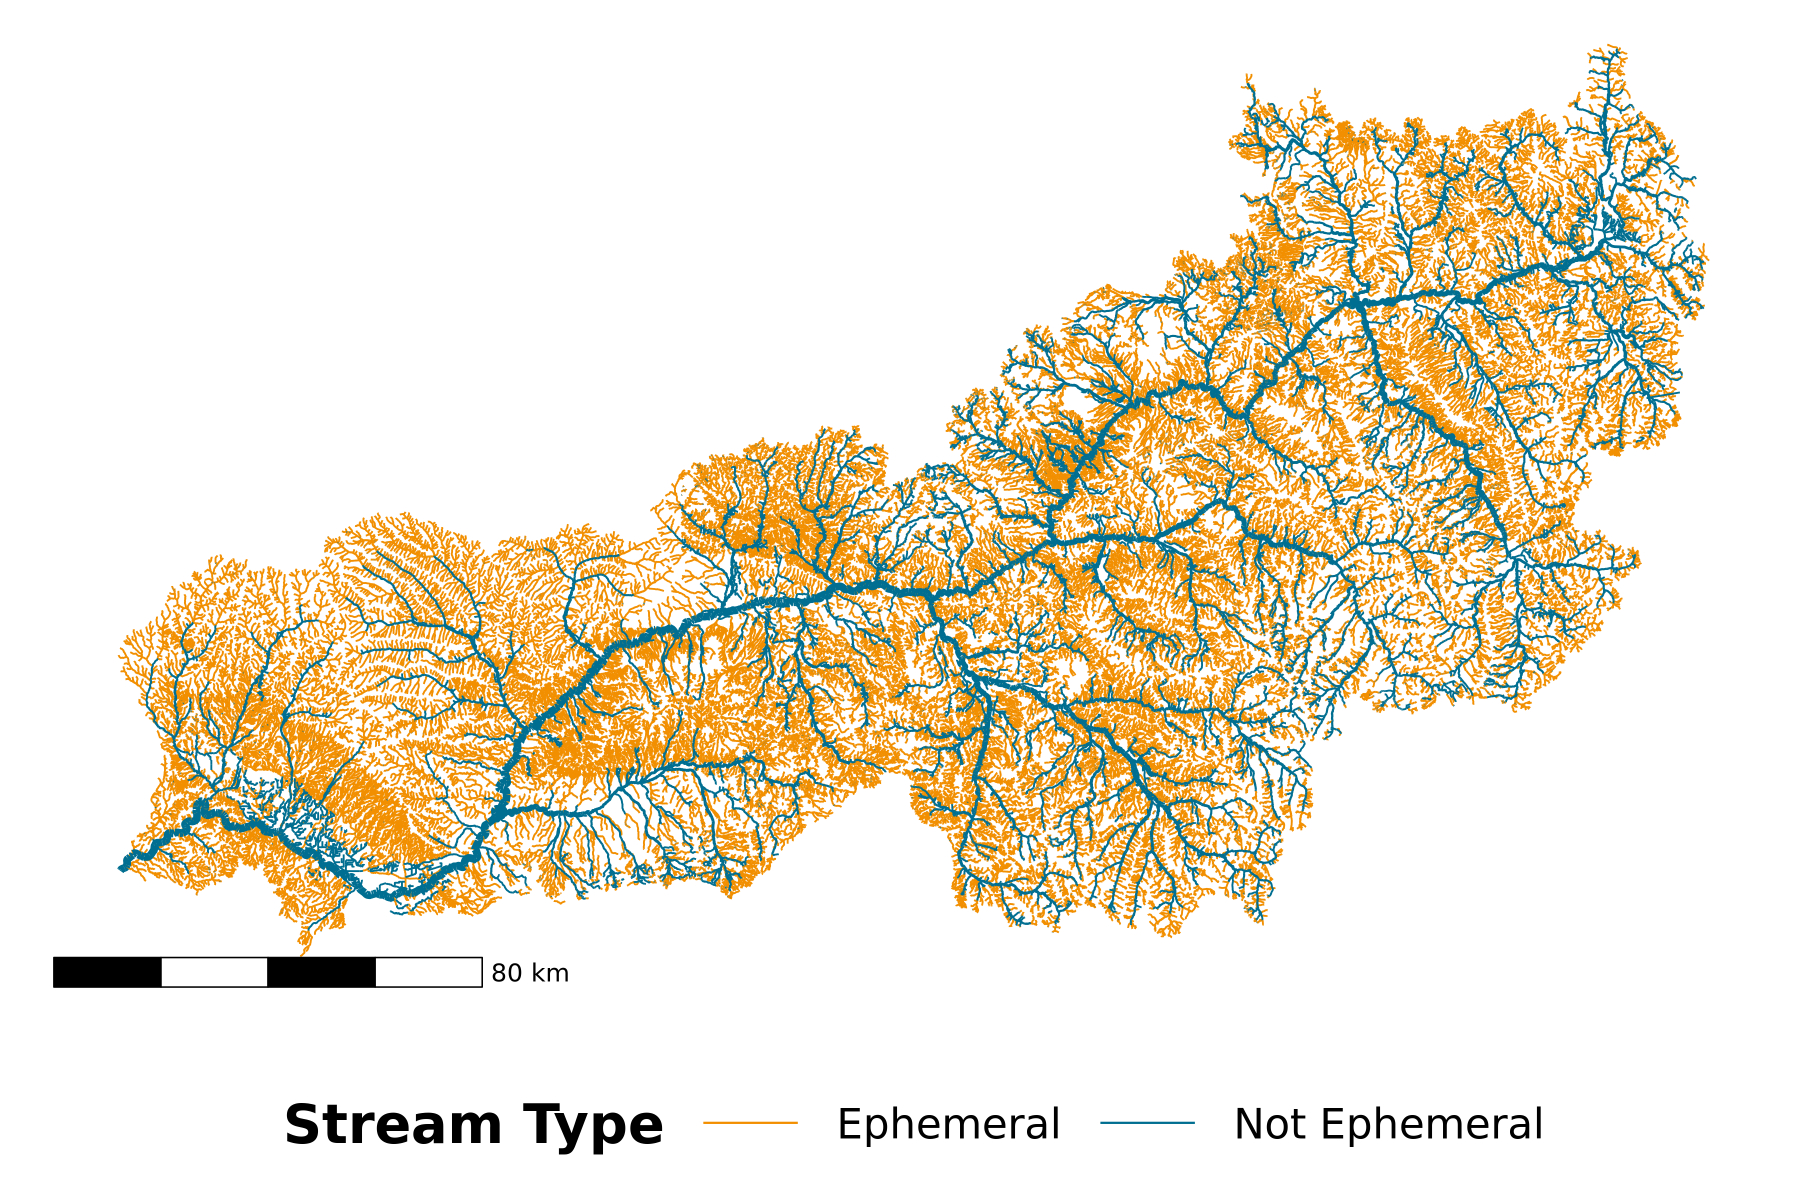 La production totale d’eau des rivières américaines est menacée par la pollution, selon une étude